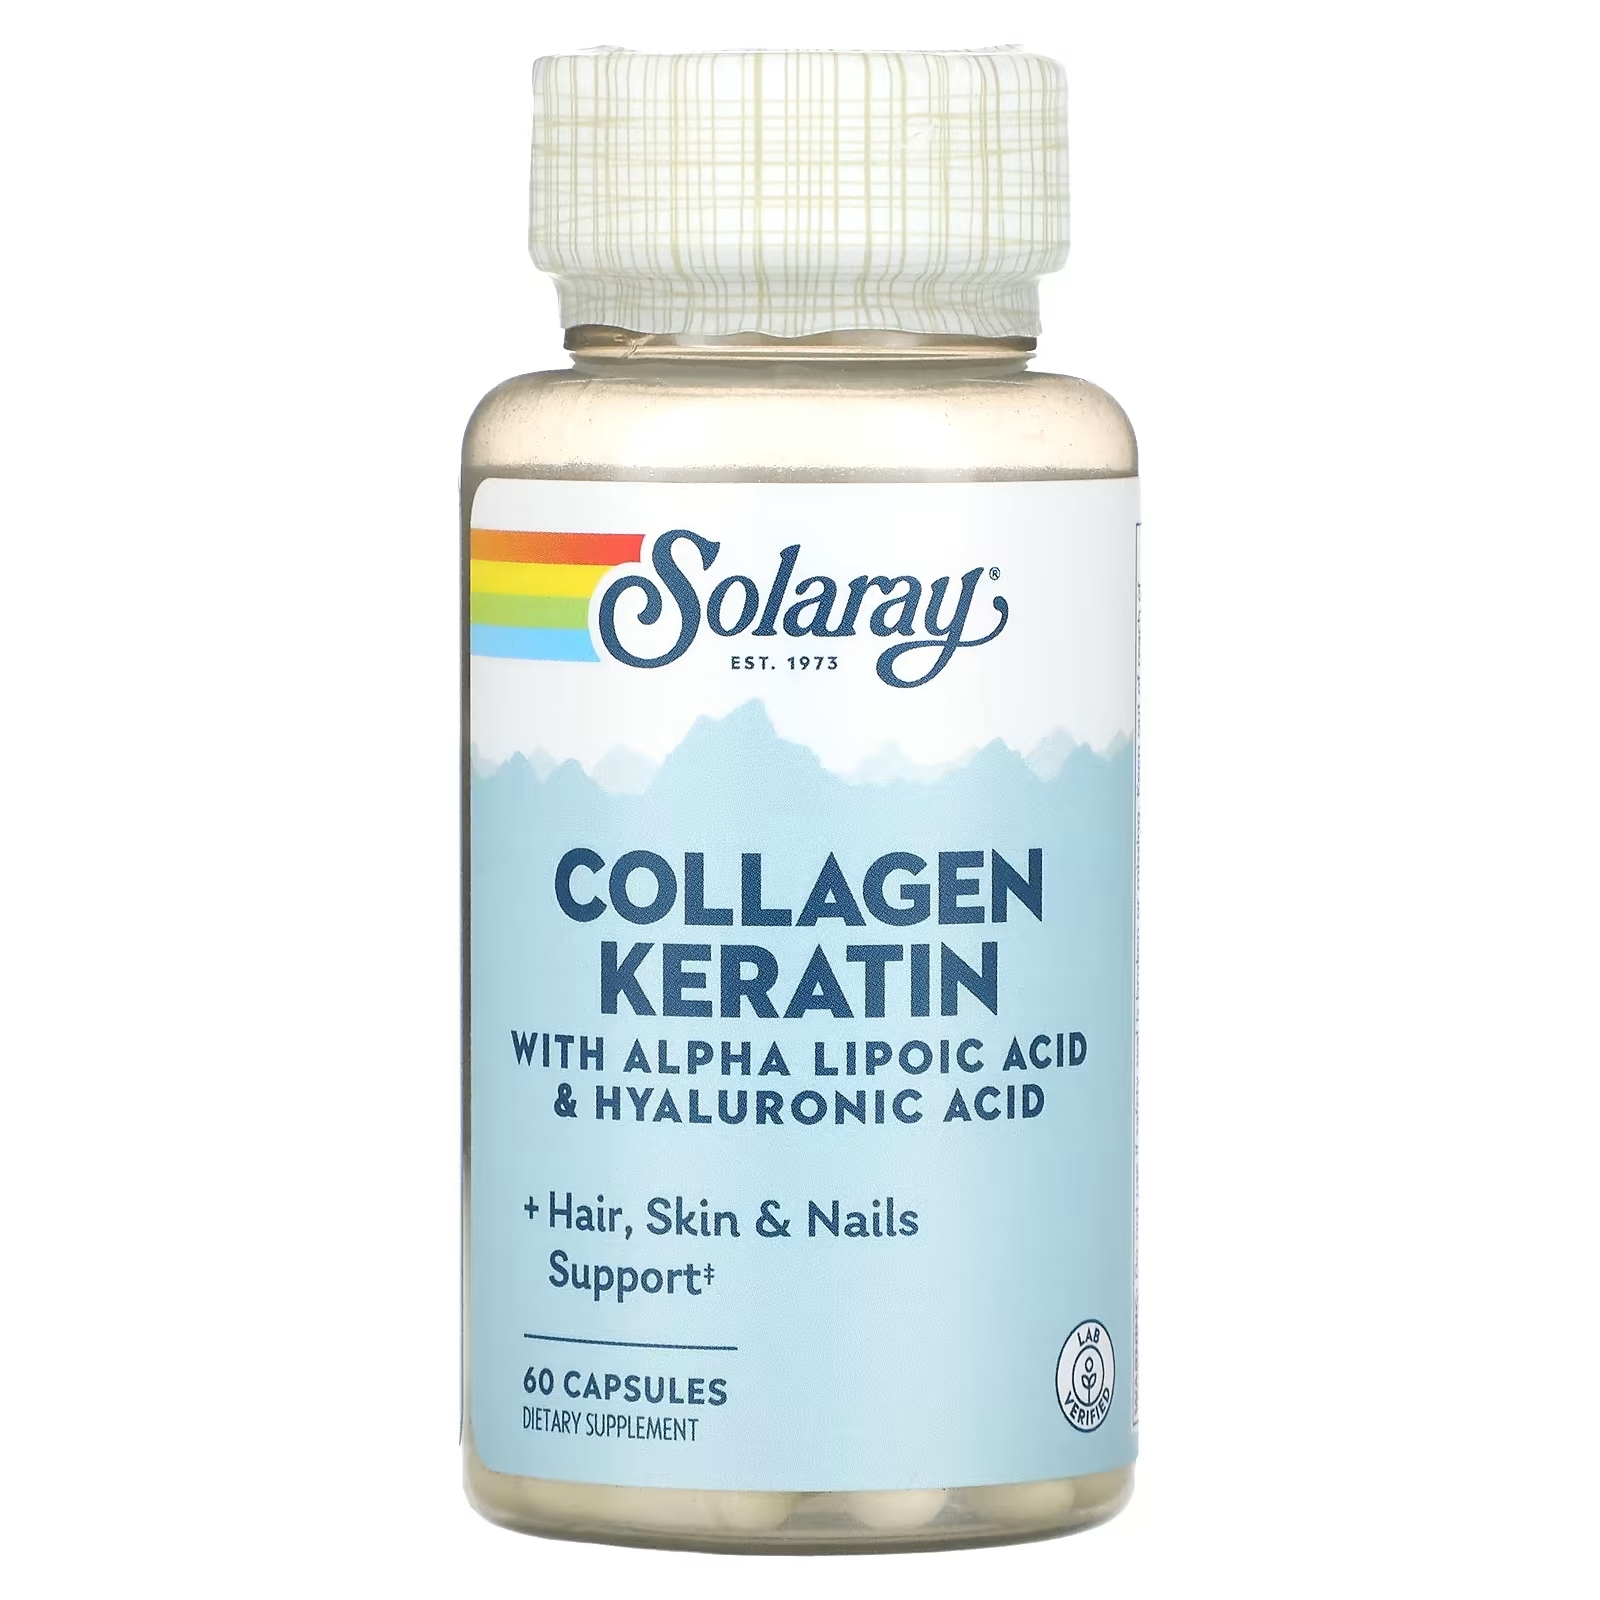 Solaray коллаген и кератин 1 2 3 типа, 60 капсул solaray коллаген и кератин 1 2 3 типа 60 капсул